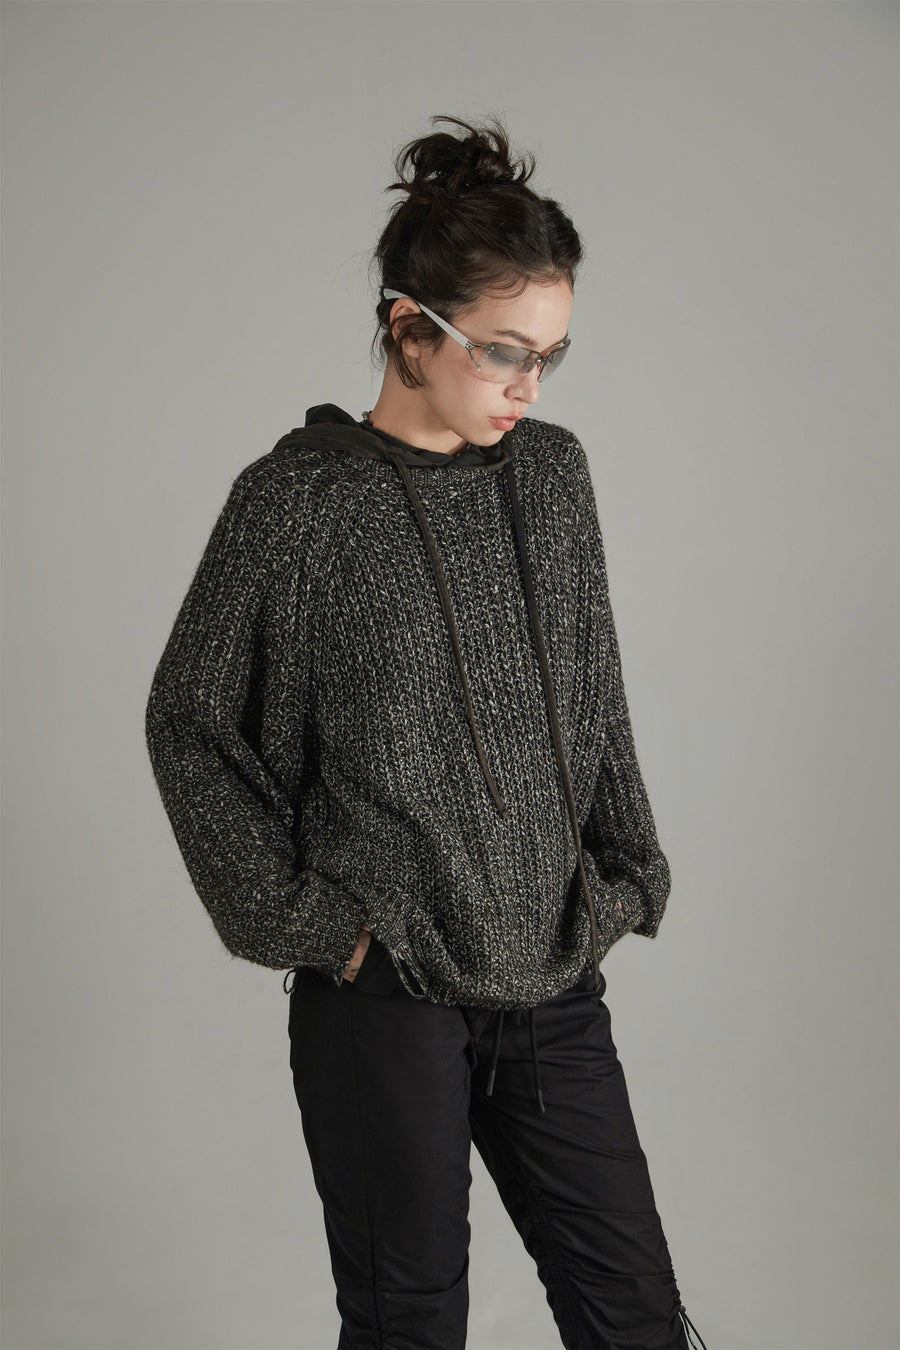 CHUU Loose Fit Raglan Knit Distressed Sweater